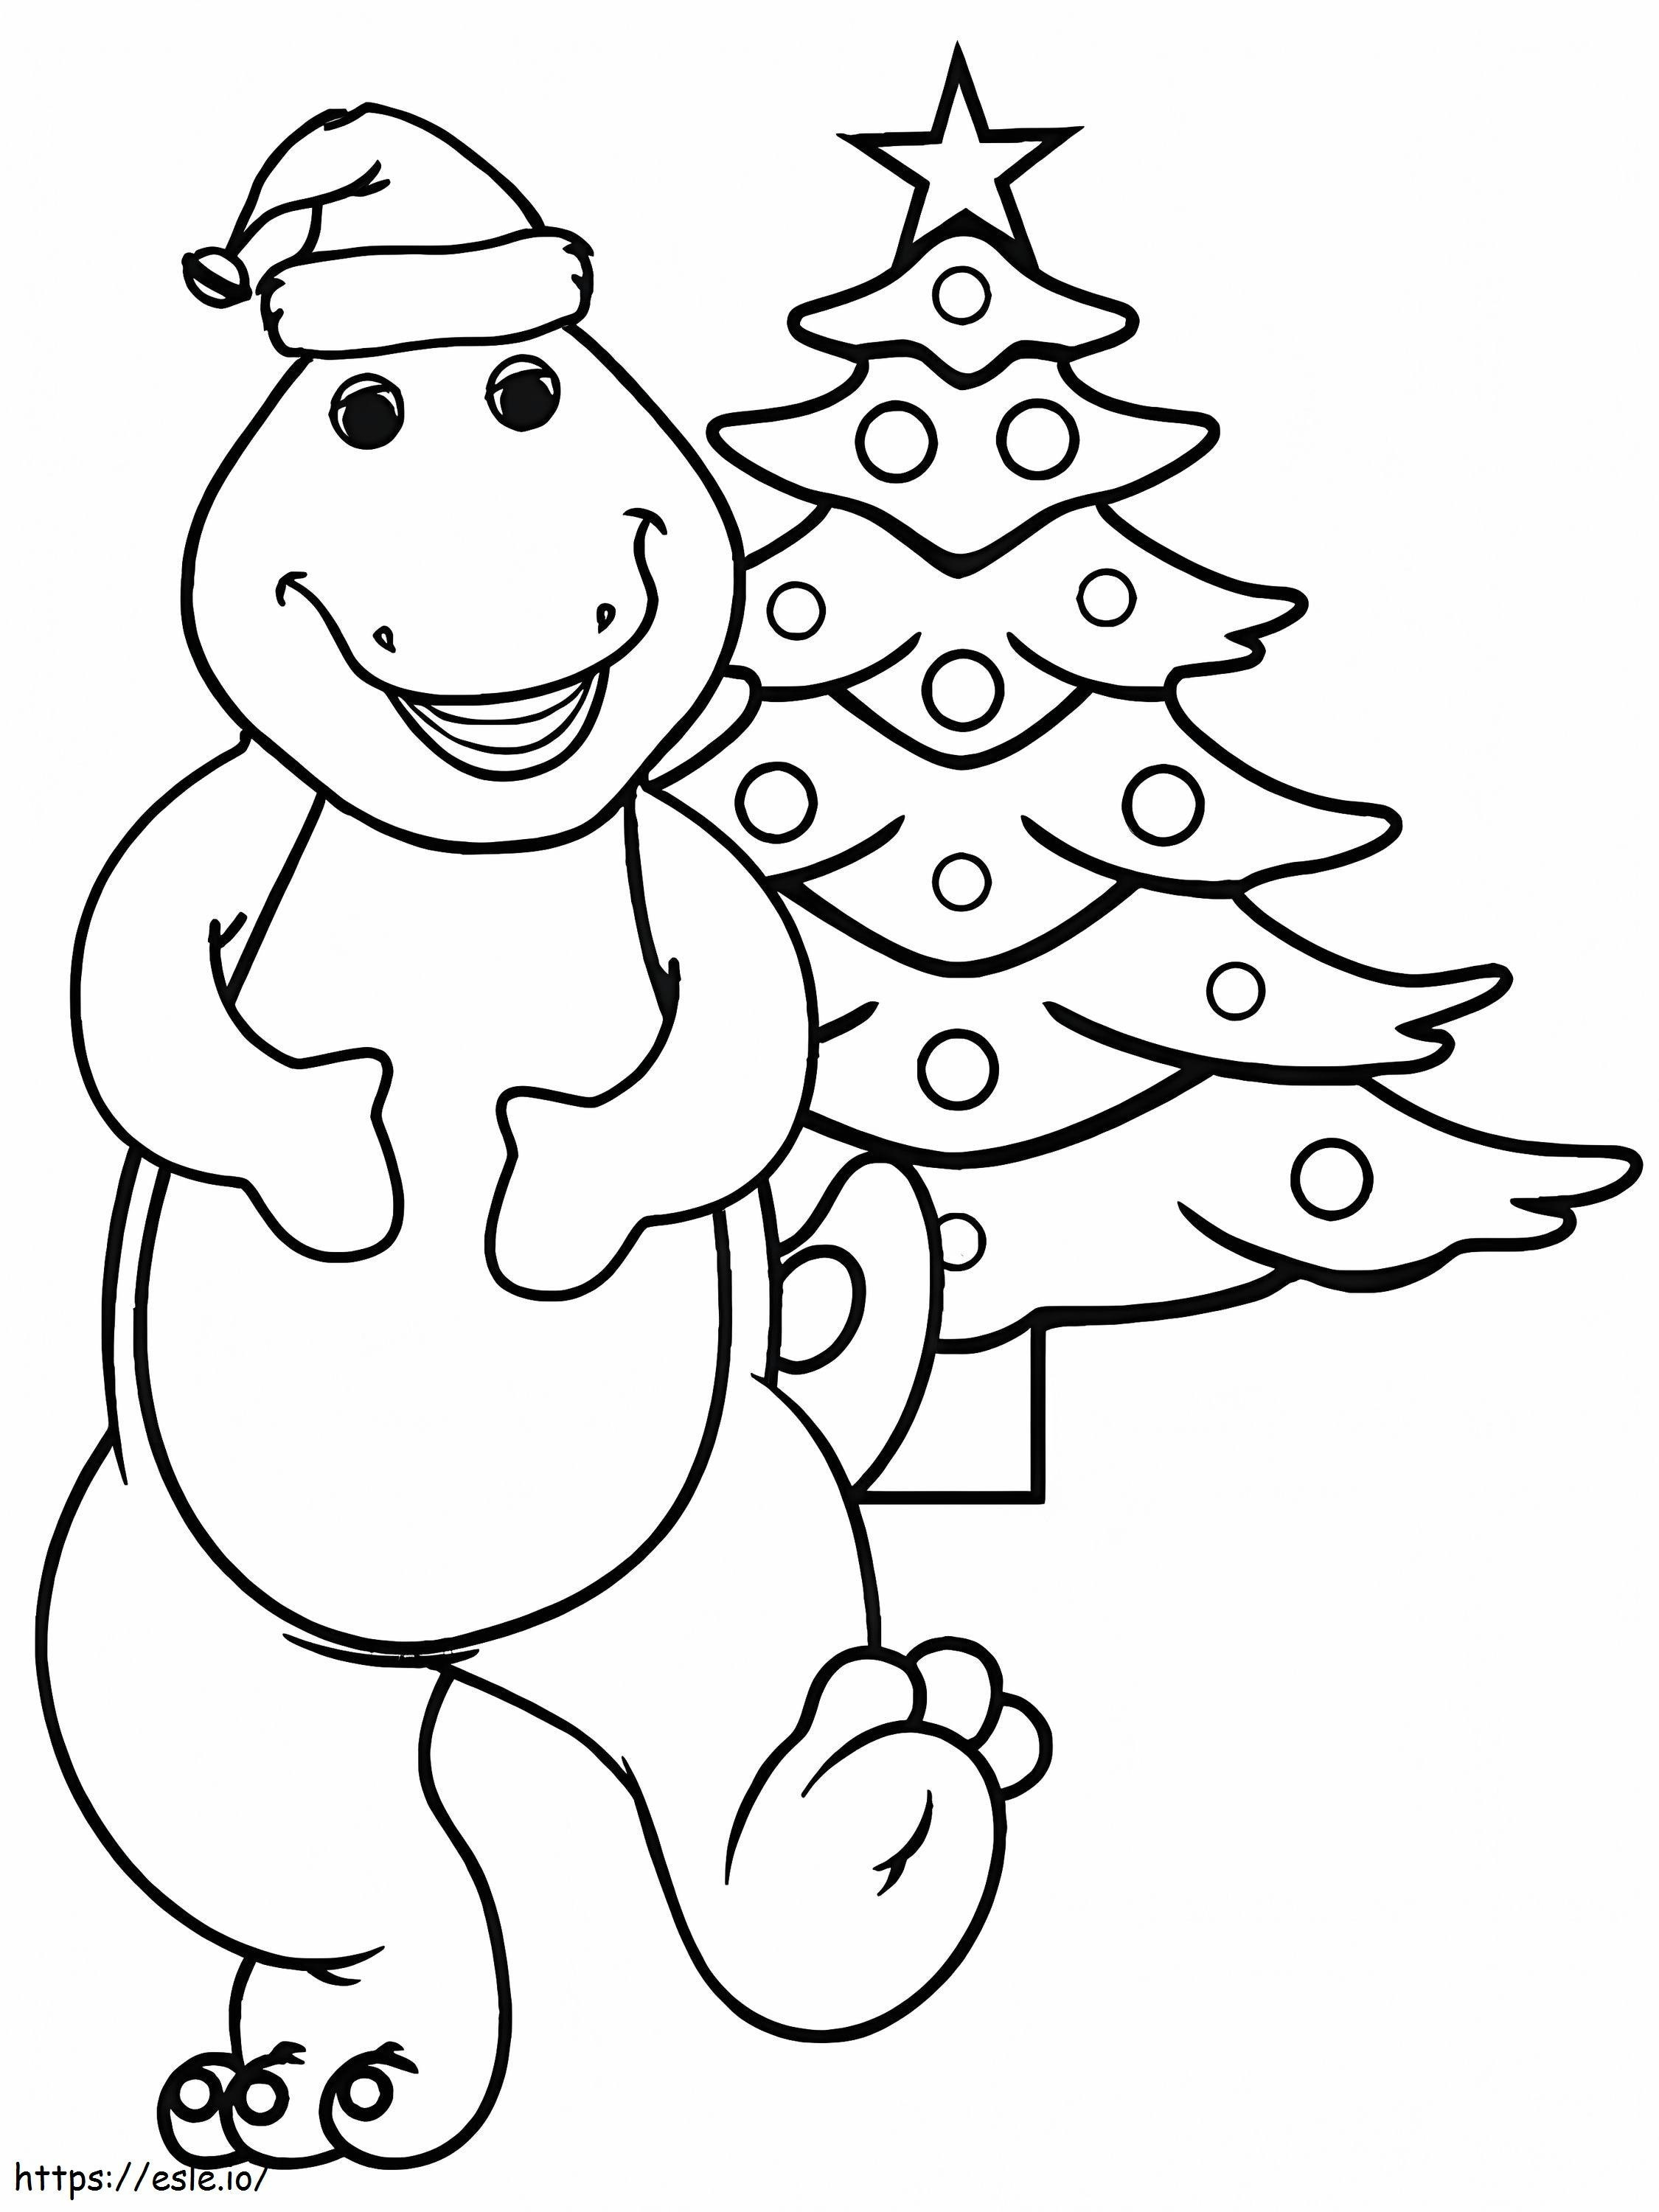 Cartoon Dinosaur With Christmas Tree coloring page